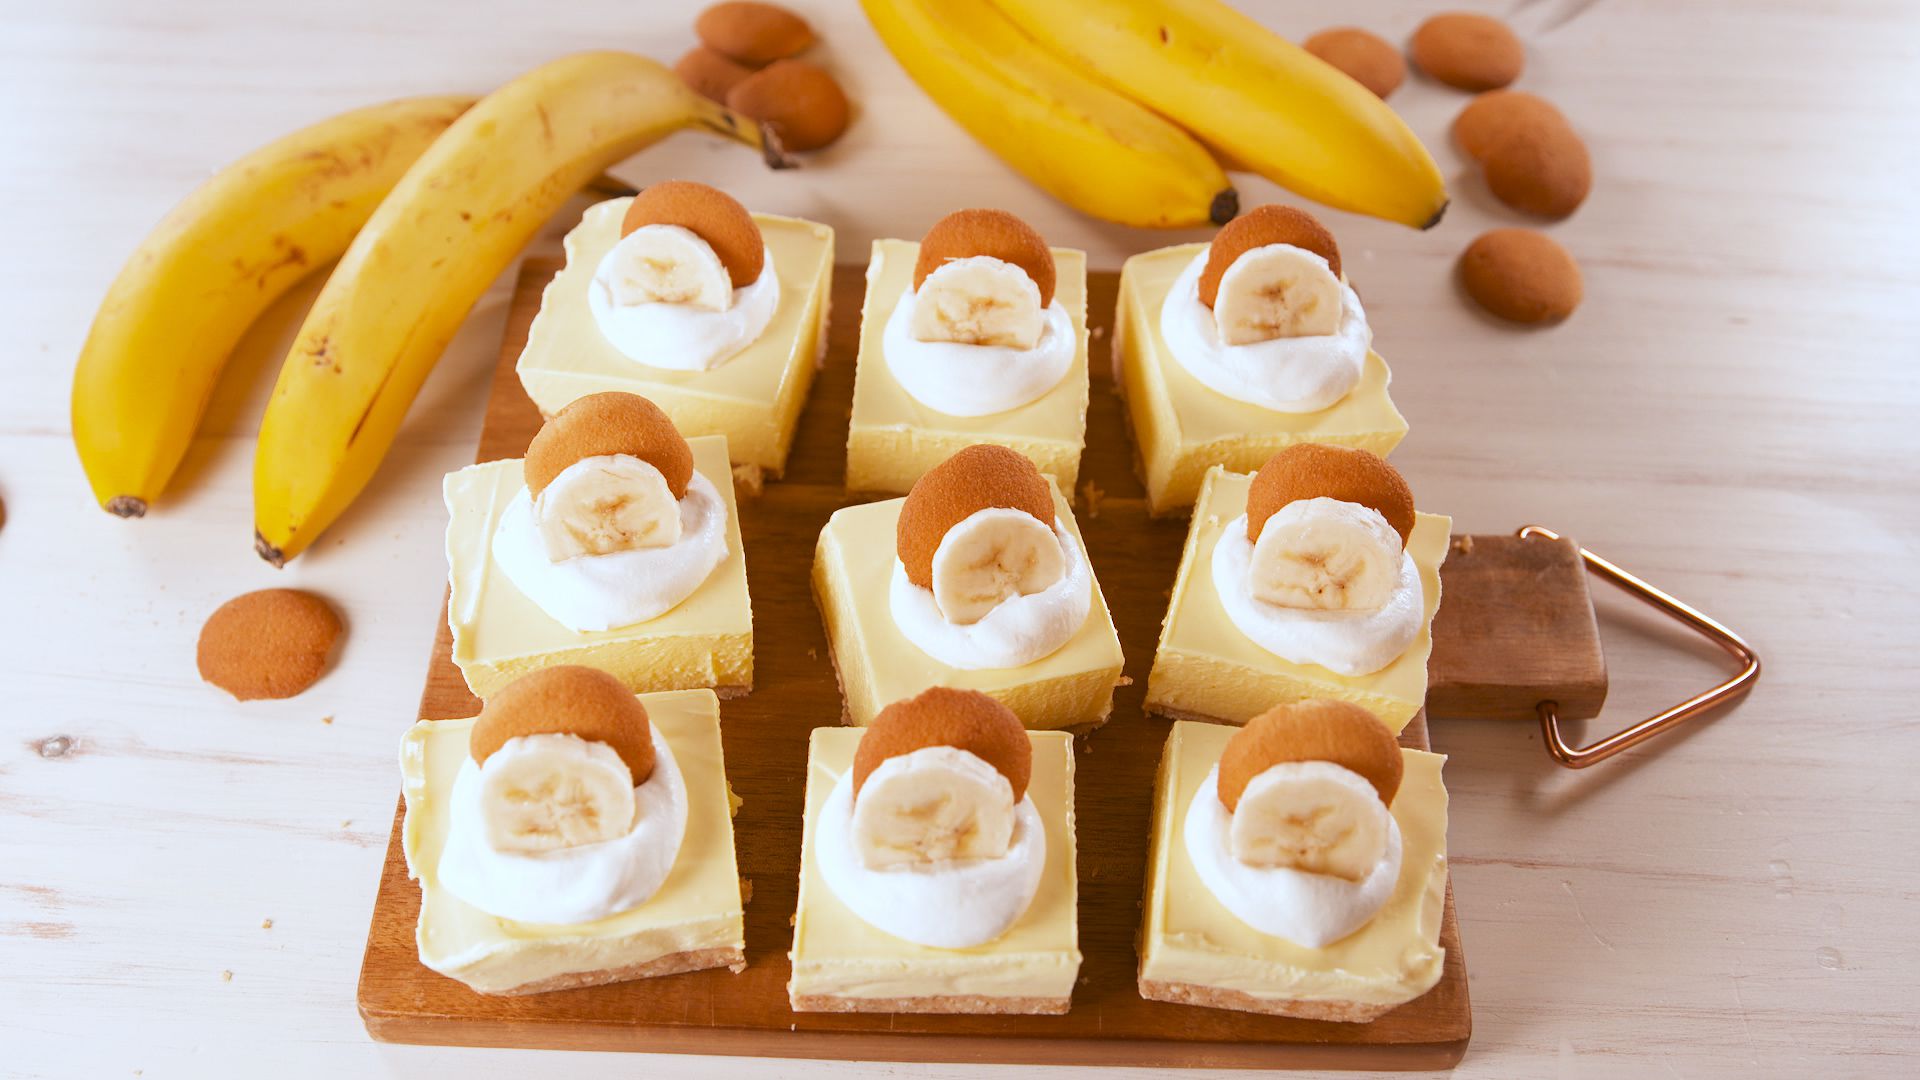 Best Banana Pudding Bars Recipe - How To Make Banana Pudding Bars